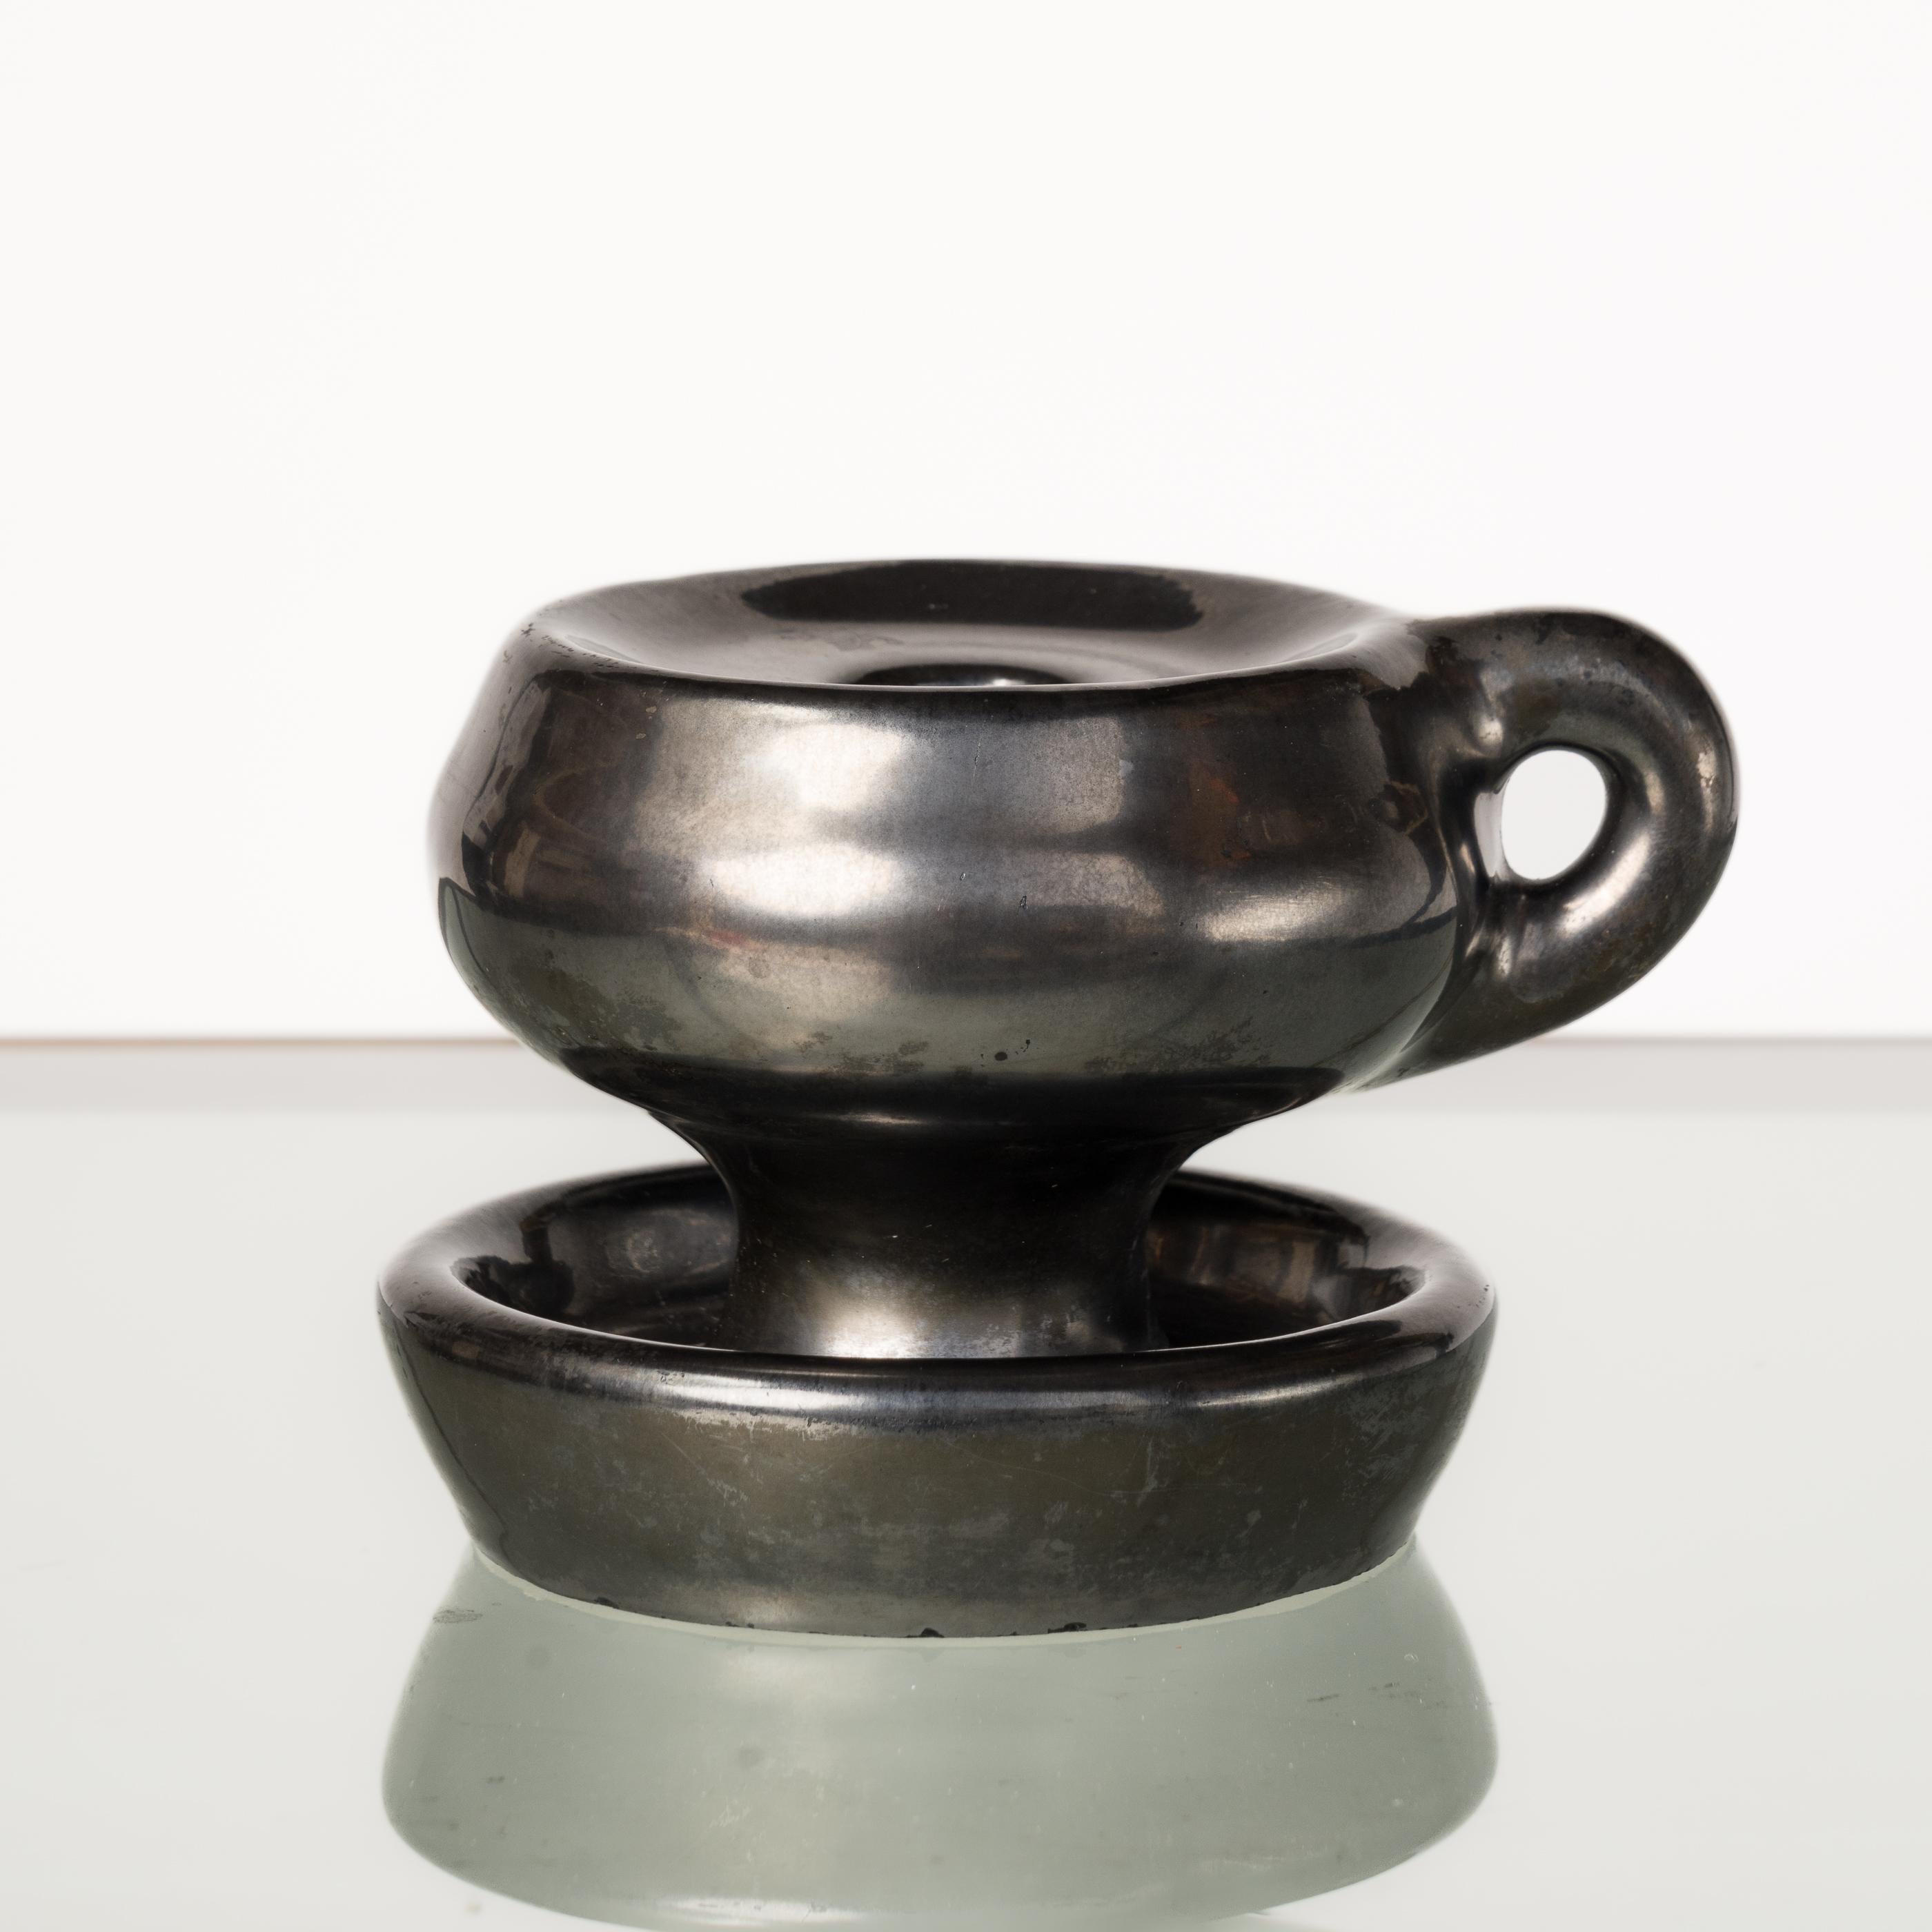 Dunkel glasierter schwarzer Keramik-Kerzenhalter im Stil von Jouve. In gutem Vintage-Zustand. Dieser Artikel wird aus Frankreich versandt und kann entweder nach Frankreich oder an einen Standort in LIC NY zurückgeschickt werden.
Der Preis